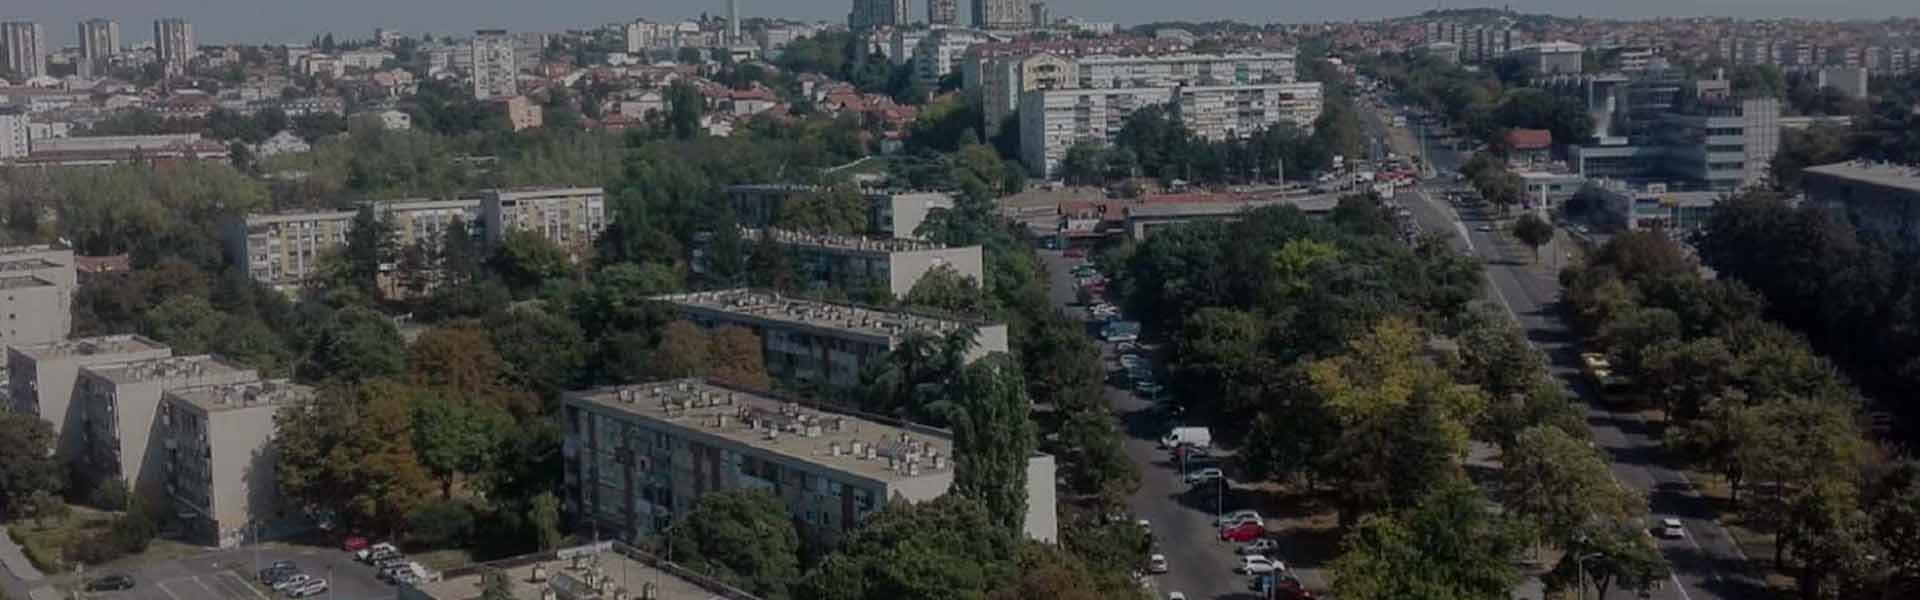 Škola šaha Beograd | Šumice